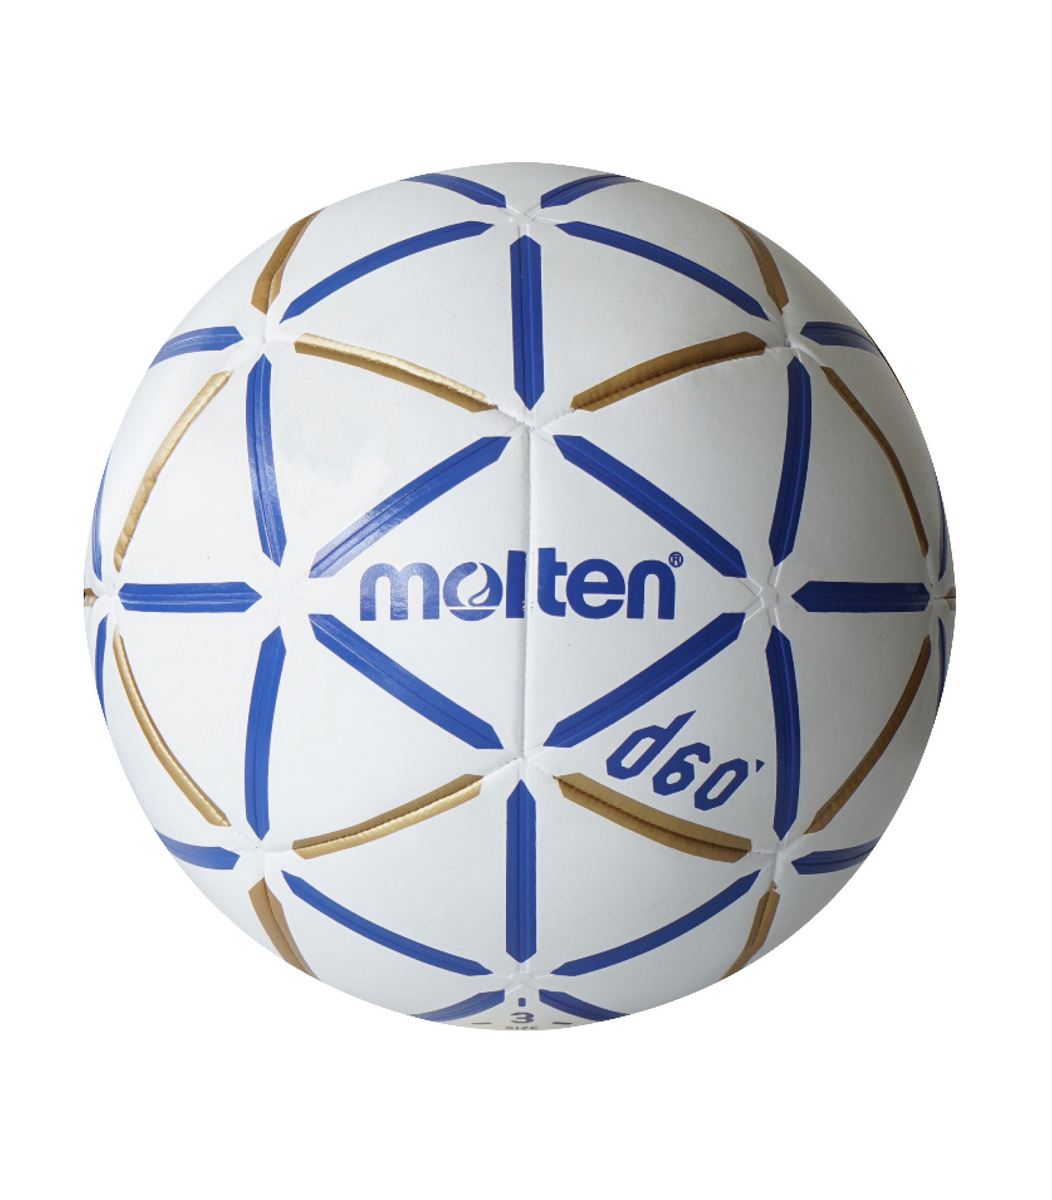 MOLTEN_D60_taille_2_bleu_ballon_de_handball_sgequipement_sg_equipement